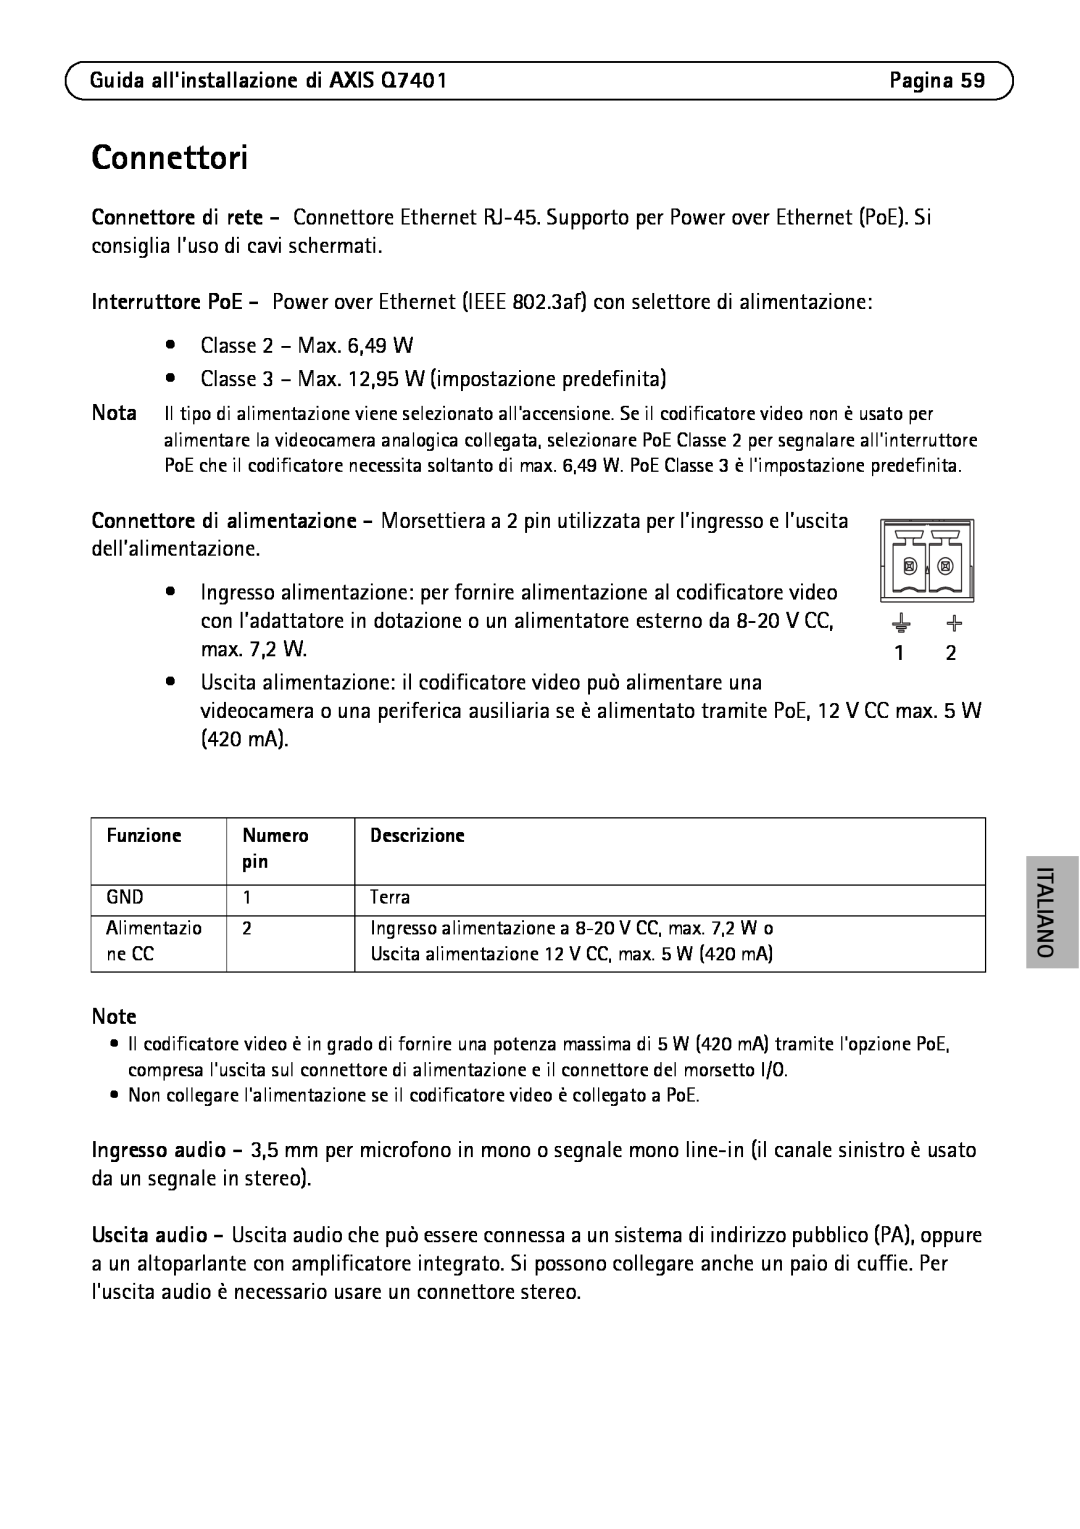 Axis Communications manual Connettori, Guida allinstallazione di AXIS Q7401 